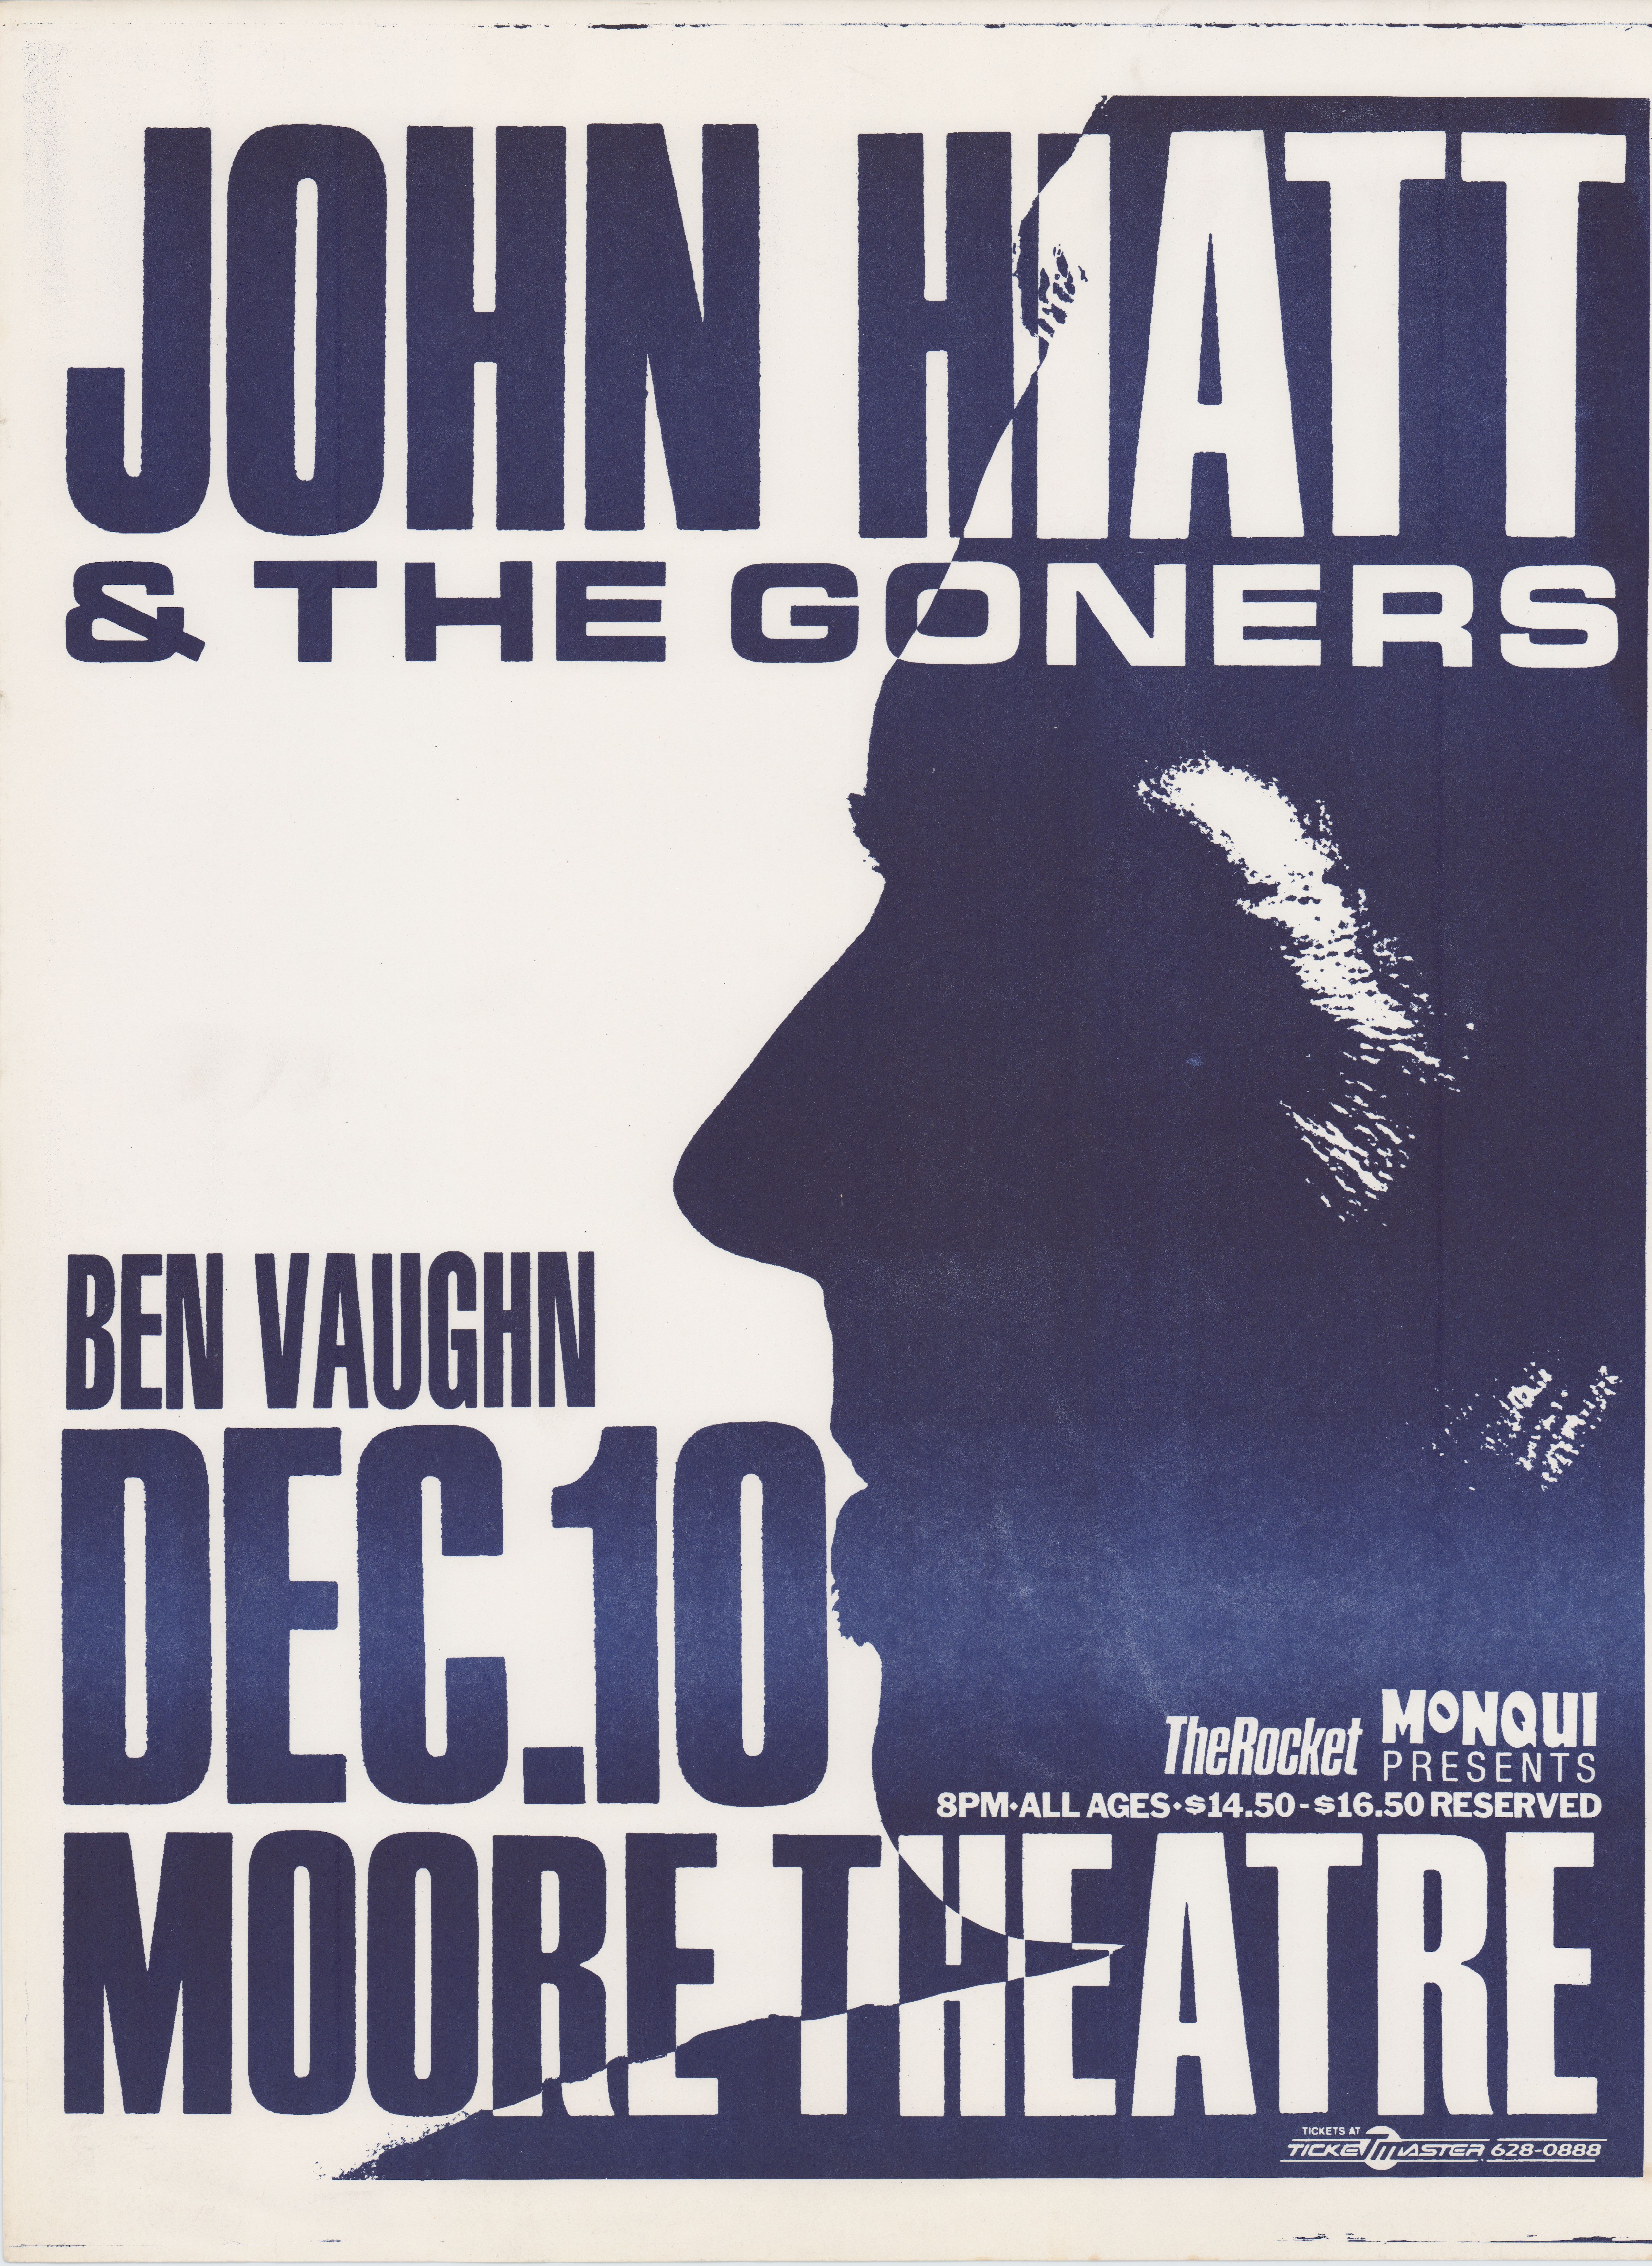 MXP-268.2 John Hiatt & The Goners 1988 Moore Theatre  Dec 10 Concert Poster